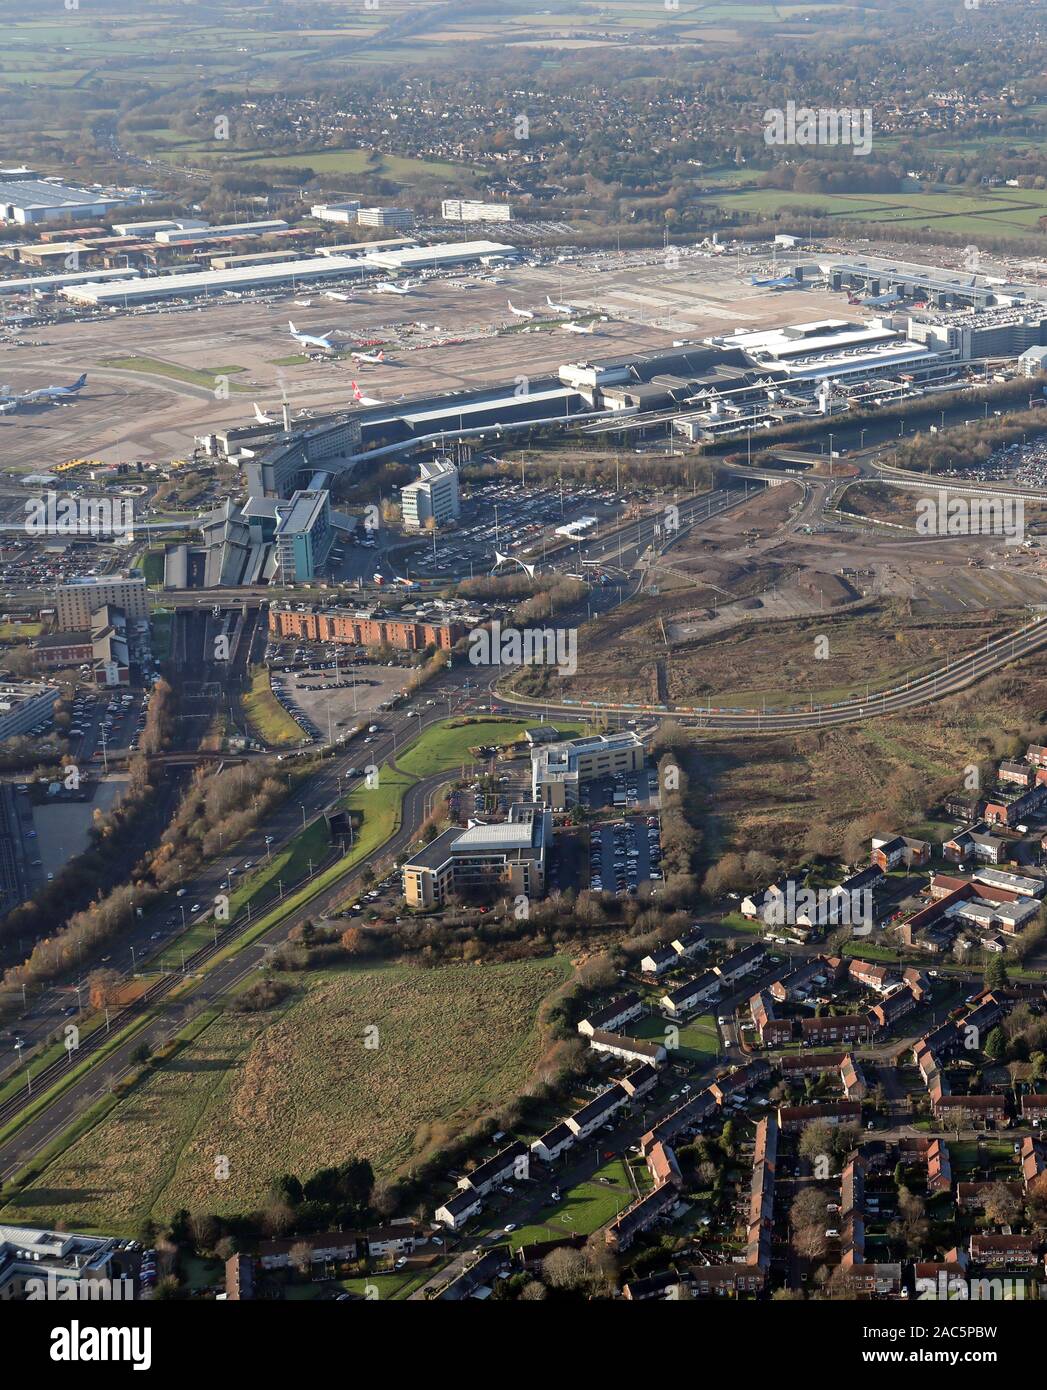 Vue aérienne de l'aérogare 2 à l'aéroport de Manchester, Royaume-Uni Banque D'Images